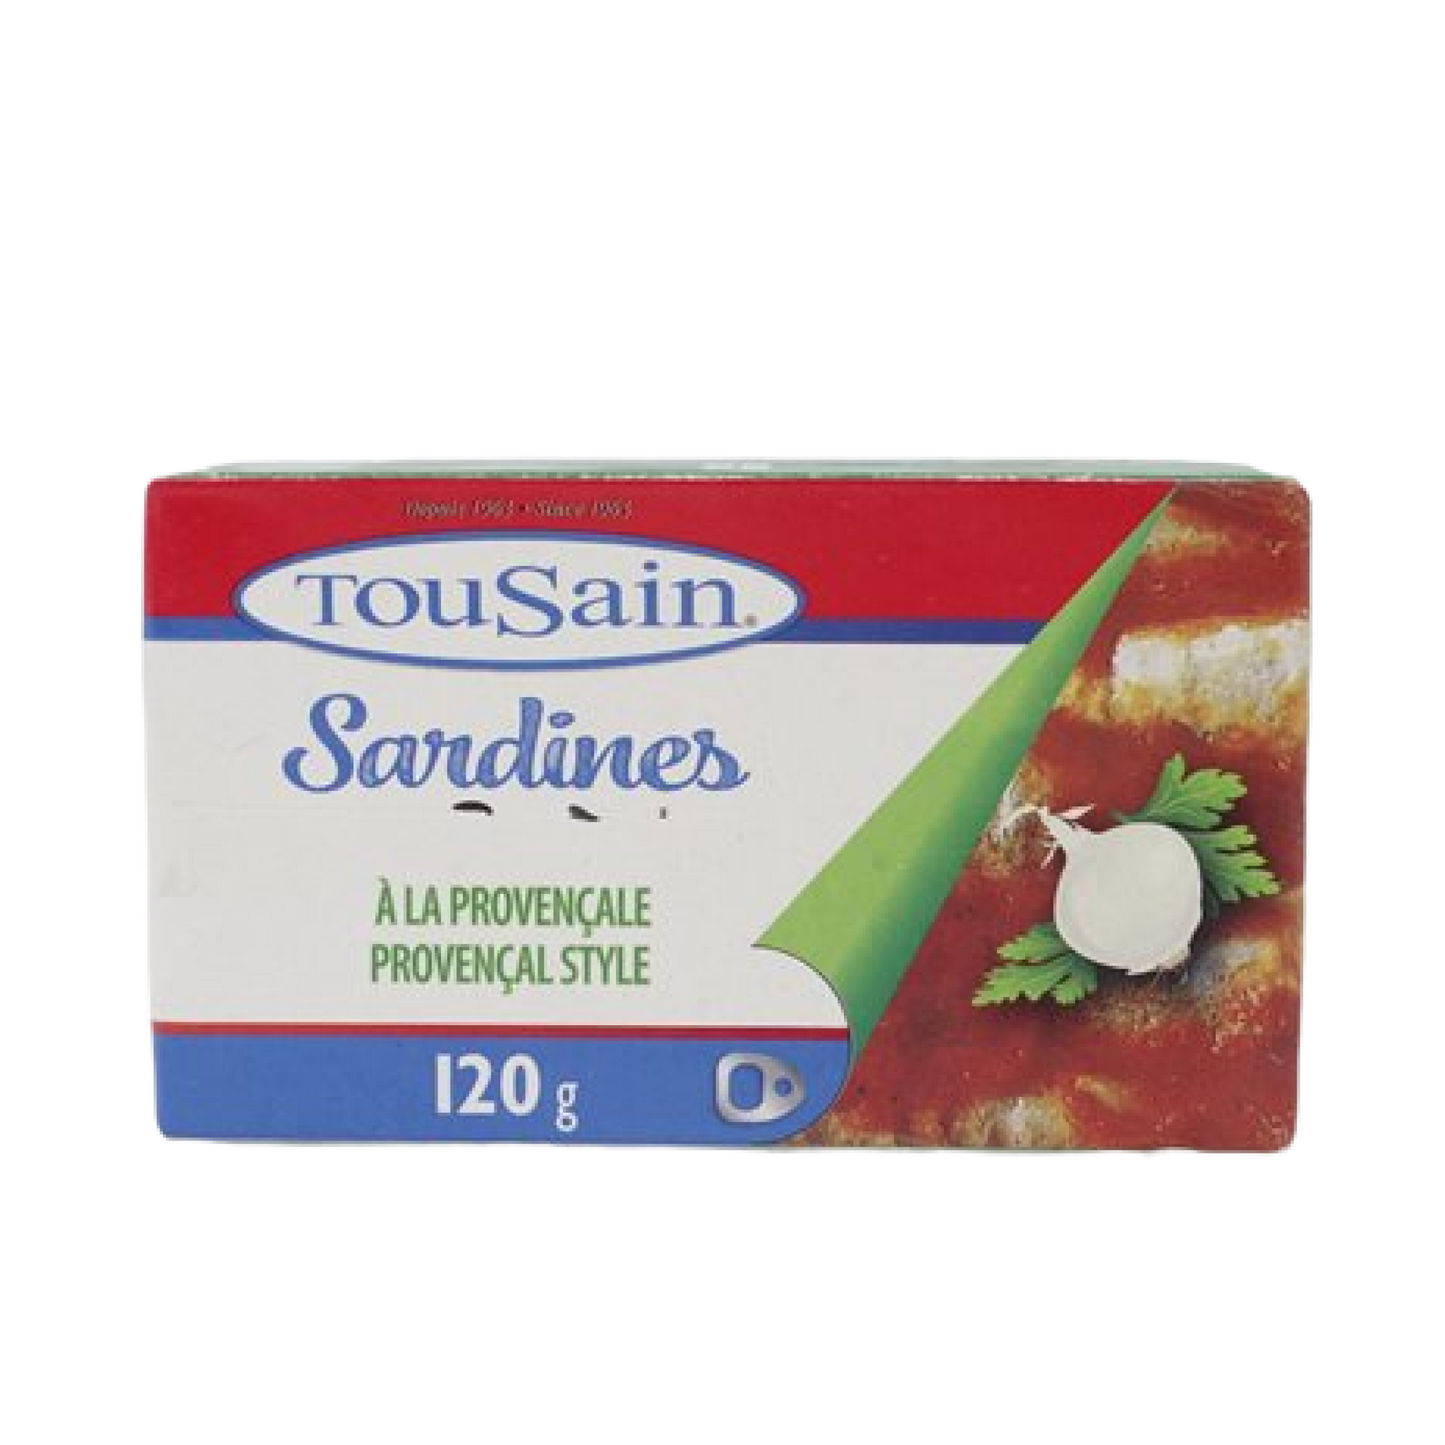 TouSain Sardines Provence Style 120g